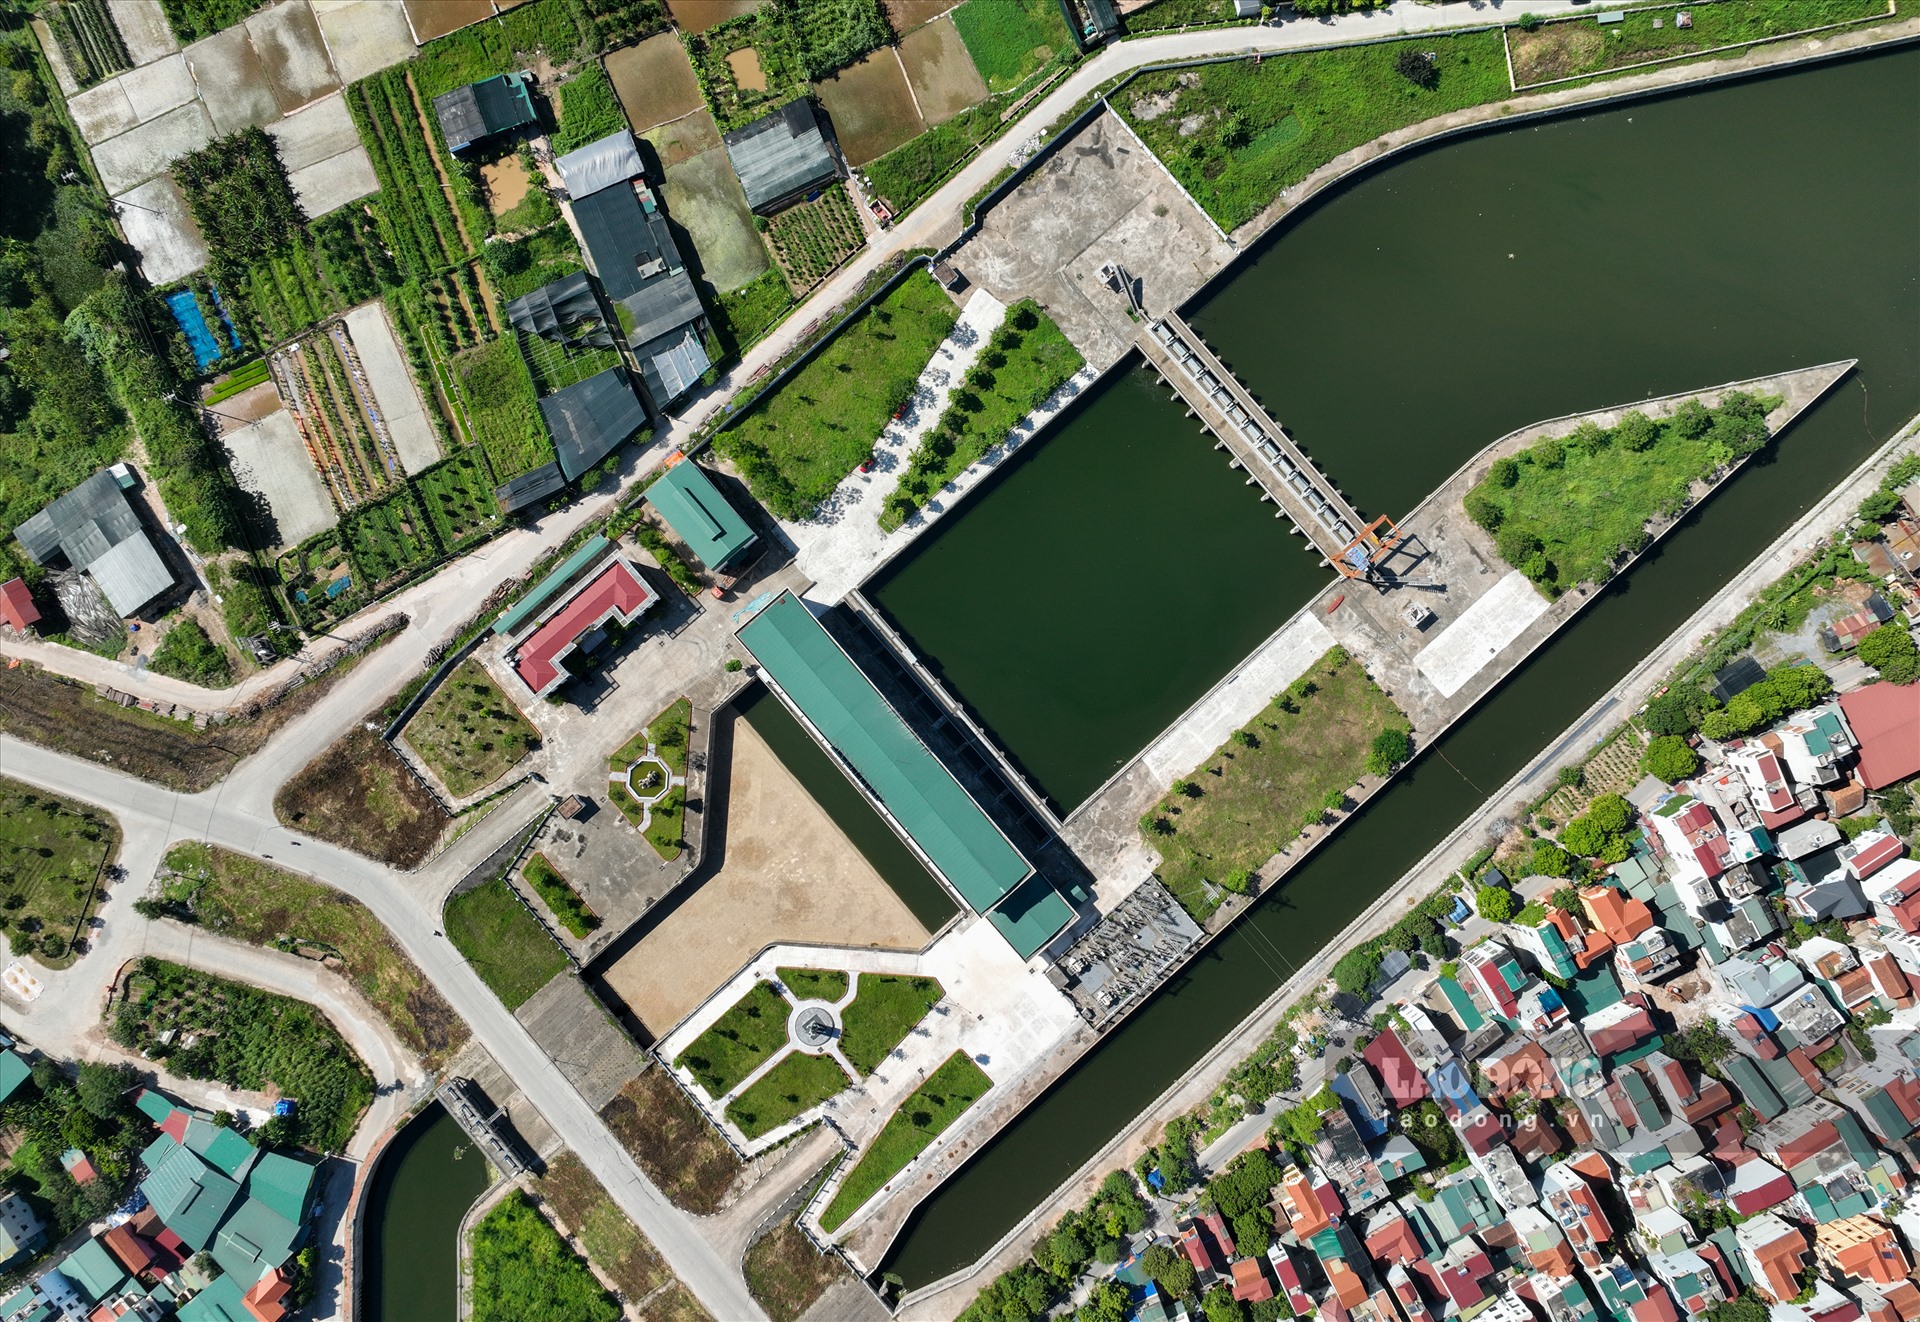 Cụm công trình có hai hạng mục lớn, gồm Xây dựng cụm công trình đầu mối Trạm bơm tiêu Yên Nghĩa; Cứng hóa kênh La Khê dẫn nước về bể hút và đường giao thông hai bên bờ kênh. Tháng 1.2020, cụm công trình đầu mối đã được đưa vào vận hành.